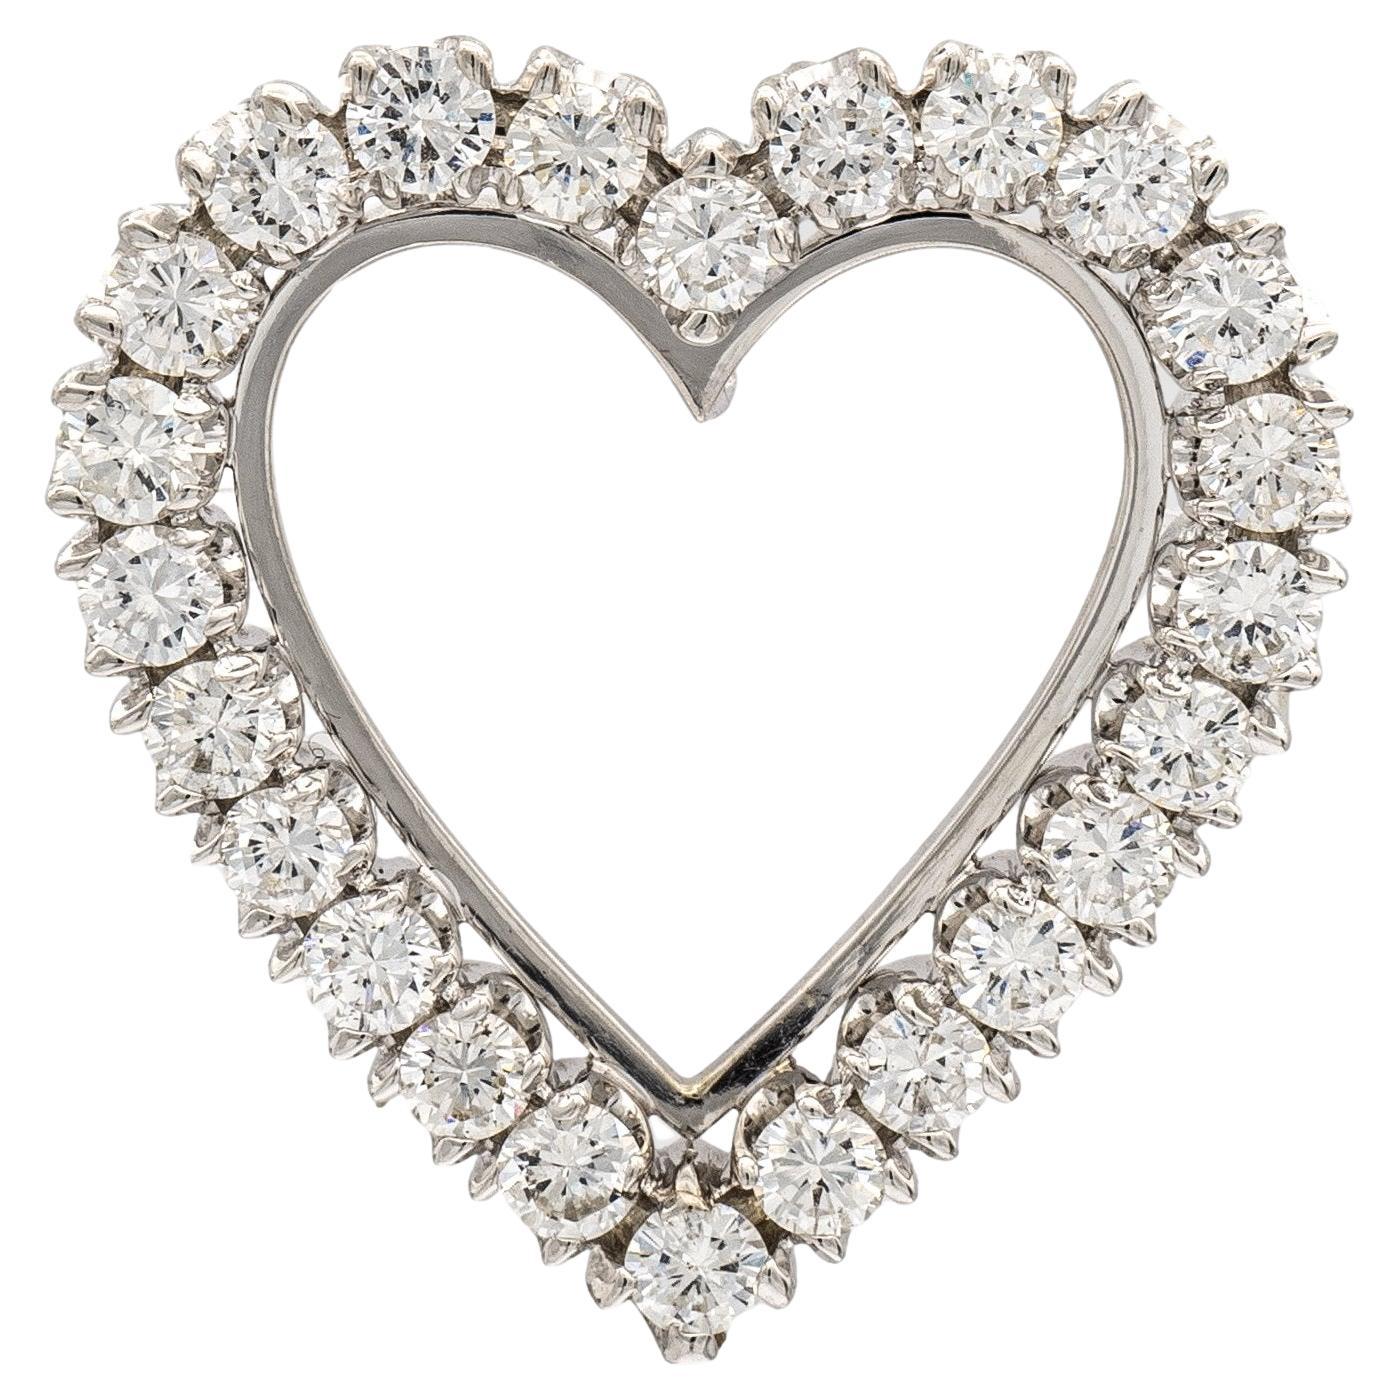 Vintage 14k White Gold Round Diamond Heart Pendant 2.40 Carat TW